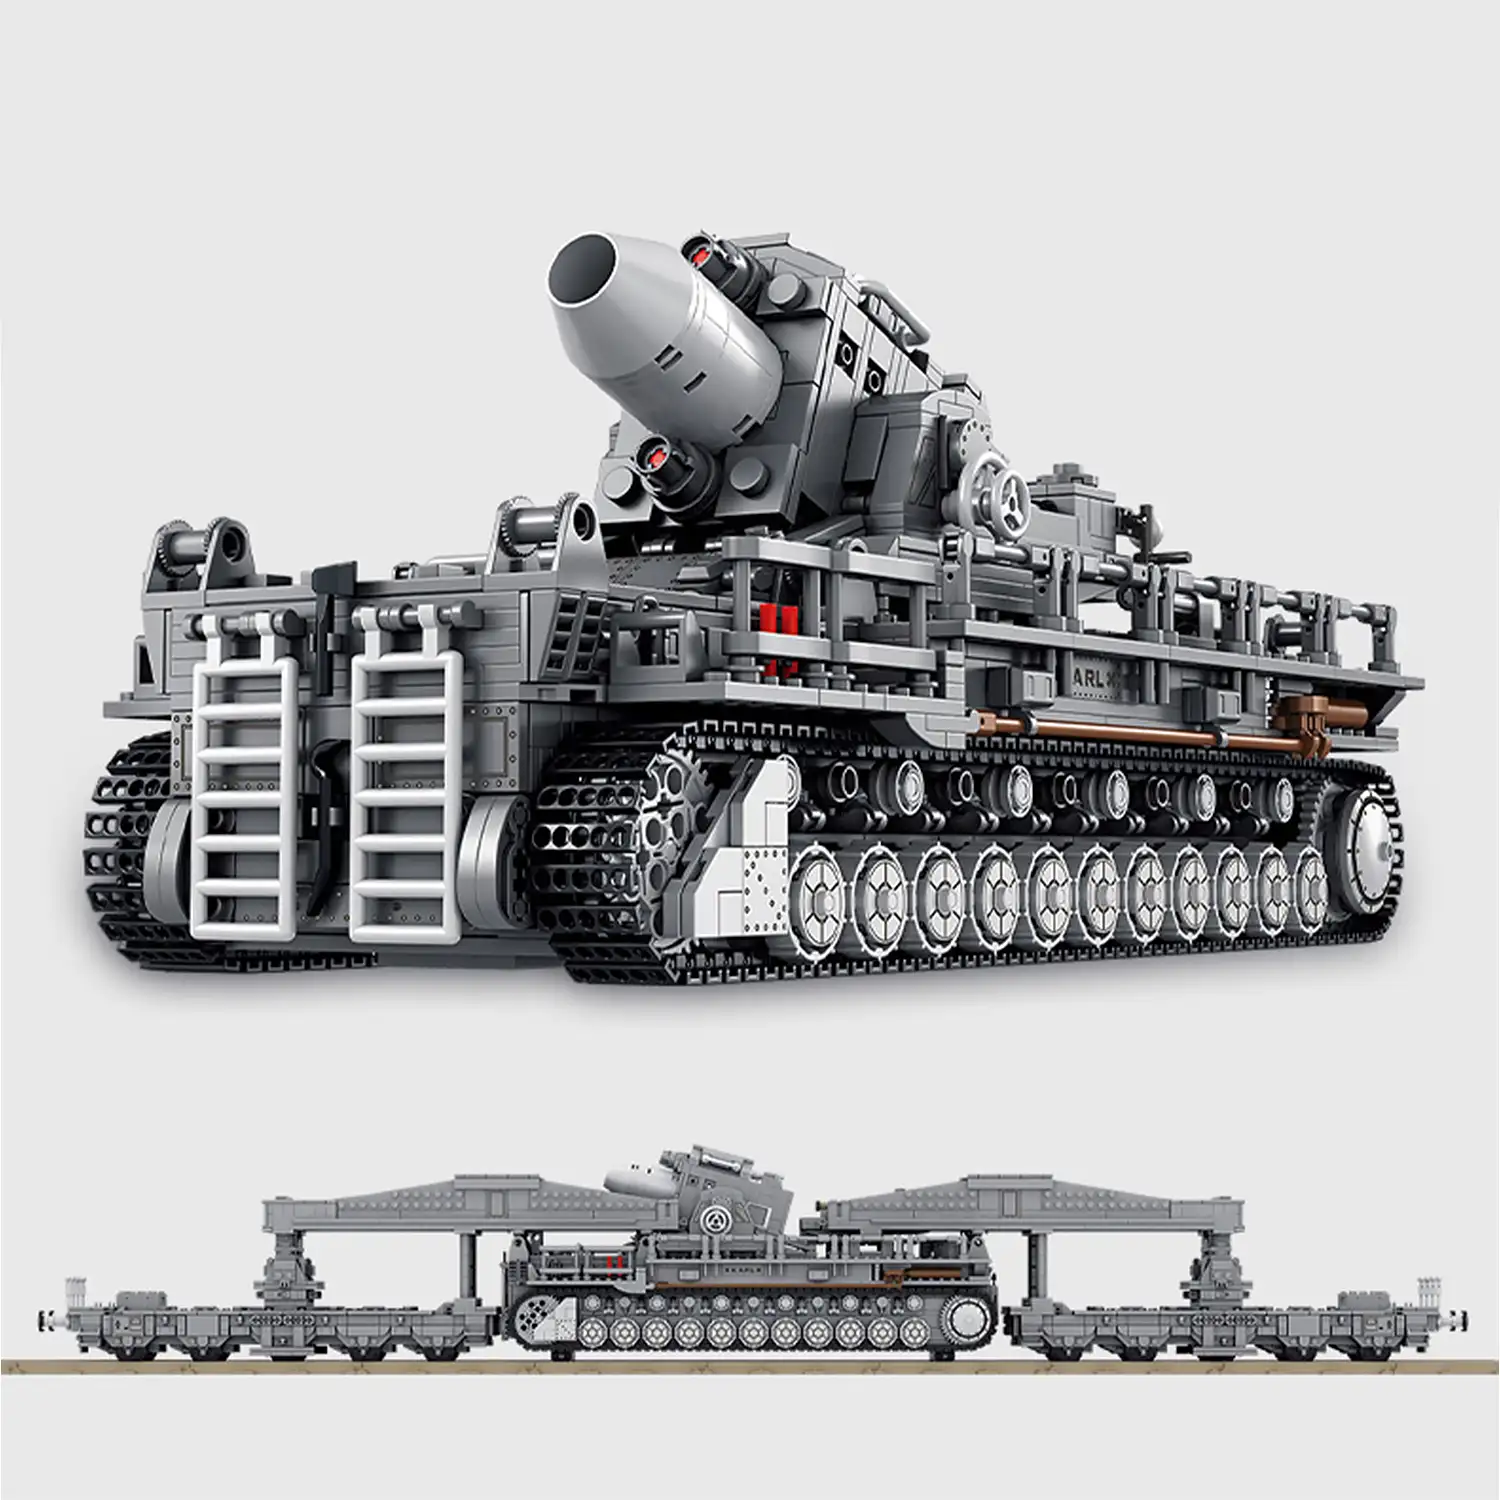 Kit de modelo de tanque con 8 figuras de soldado, WW2, Karl Mortar convoy militar XL, 4158 piezas.